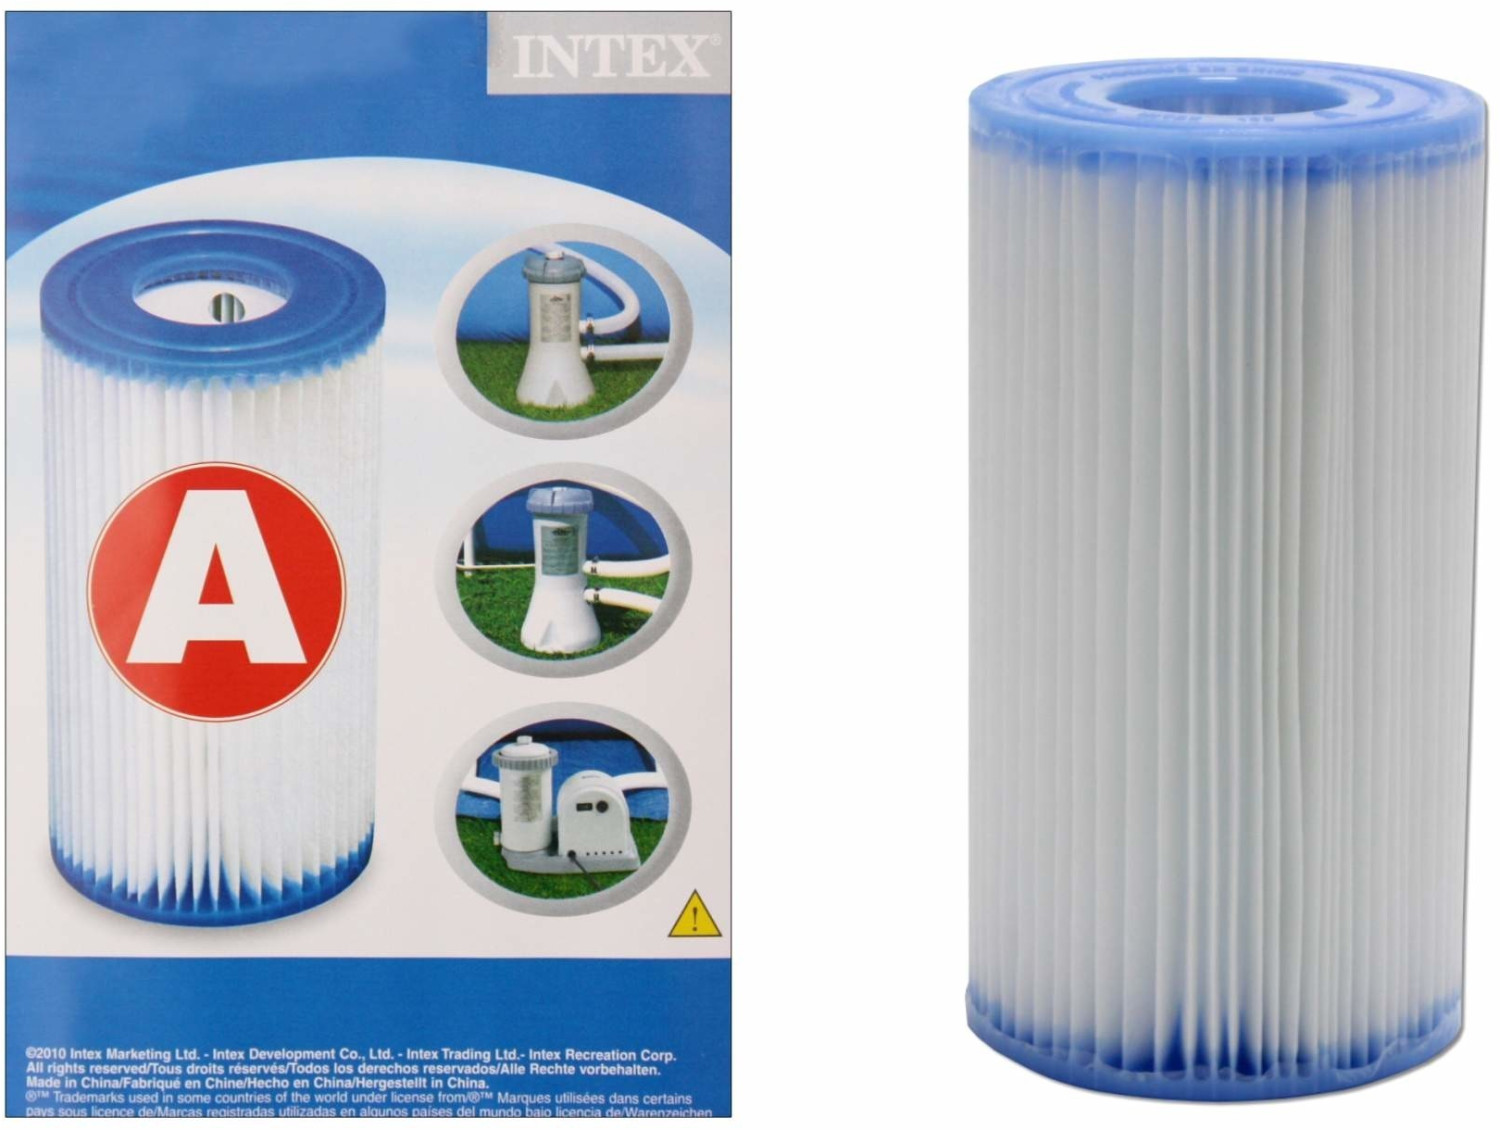 Intex 29003 - Filterkartusche Filter für Pool, Typ A, 3er Pack